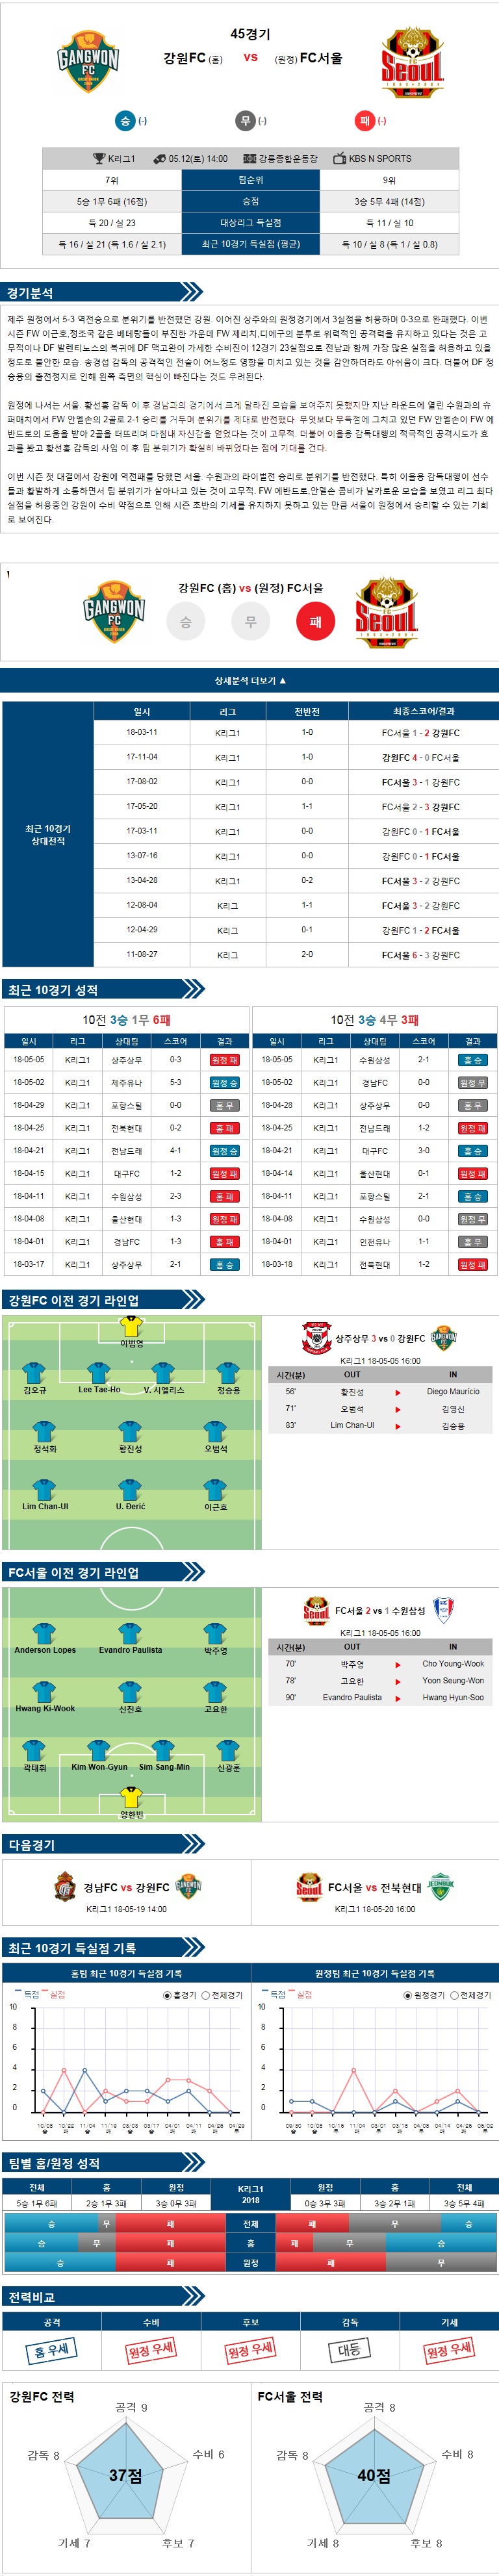 5-12 [K리그클래식] 14:00 축구분석 강원 vs 서울